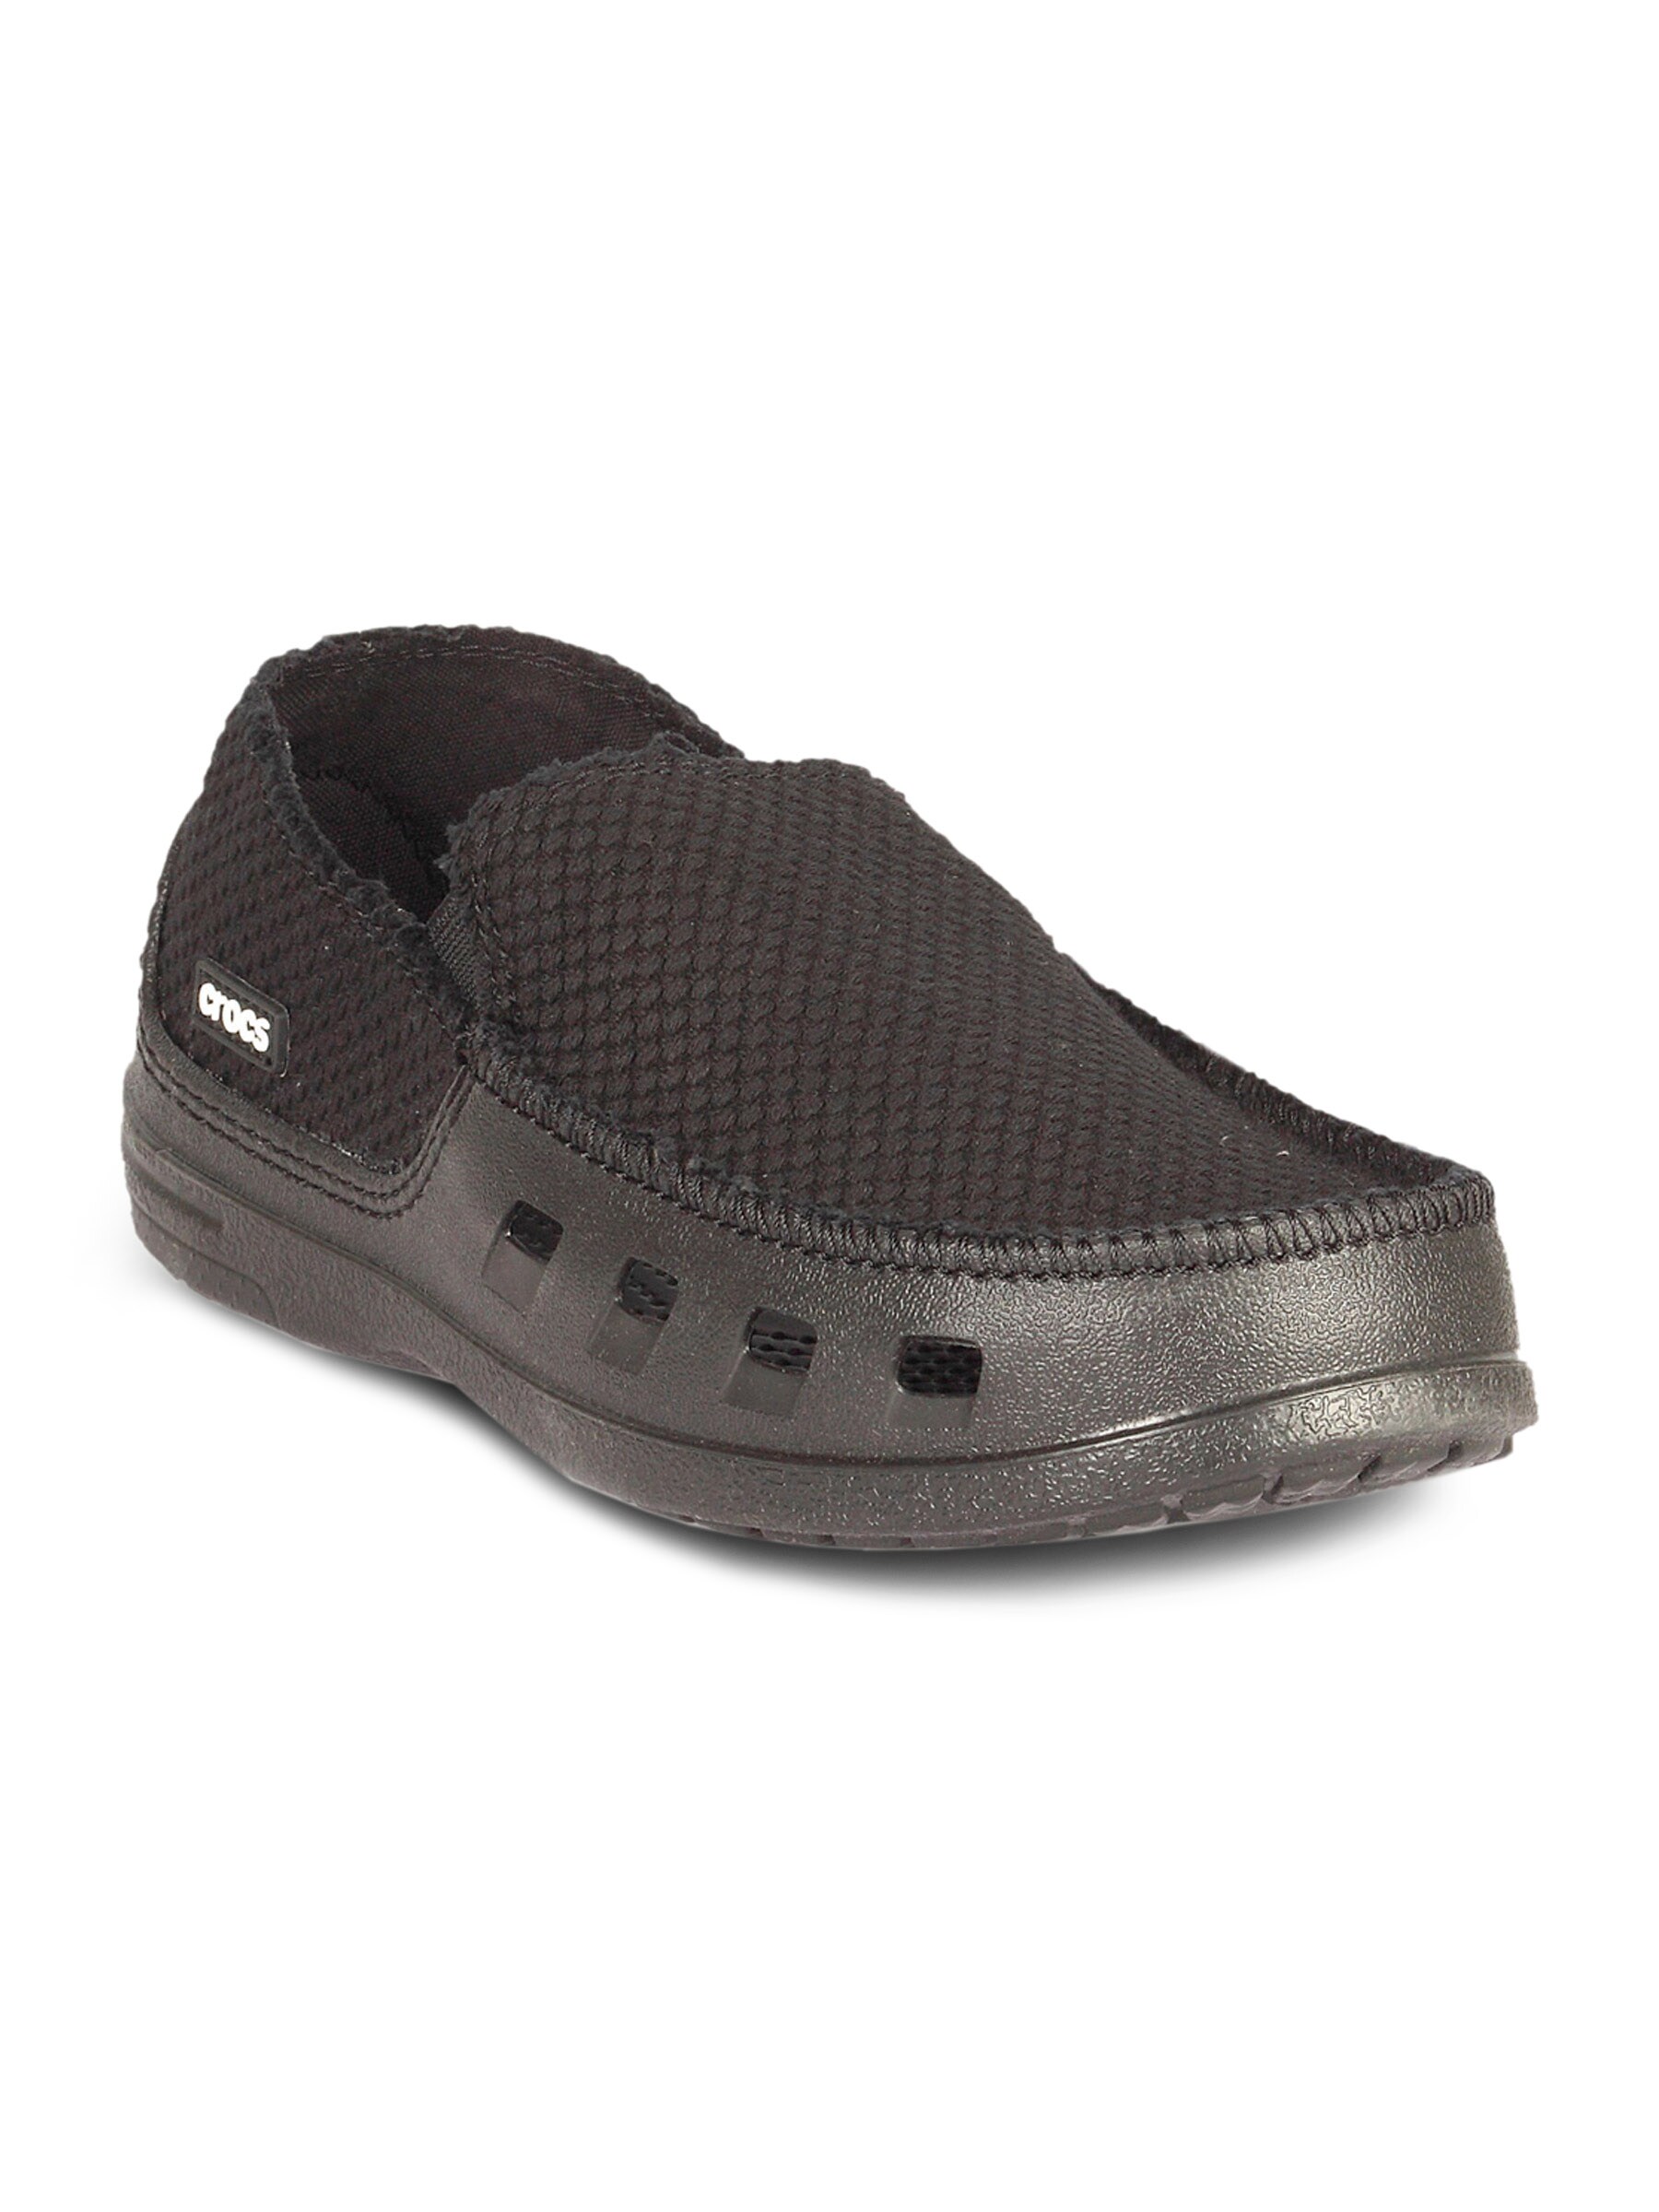 Crocs Men's Tideline Canvas Black Shoe